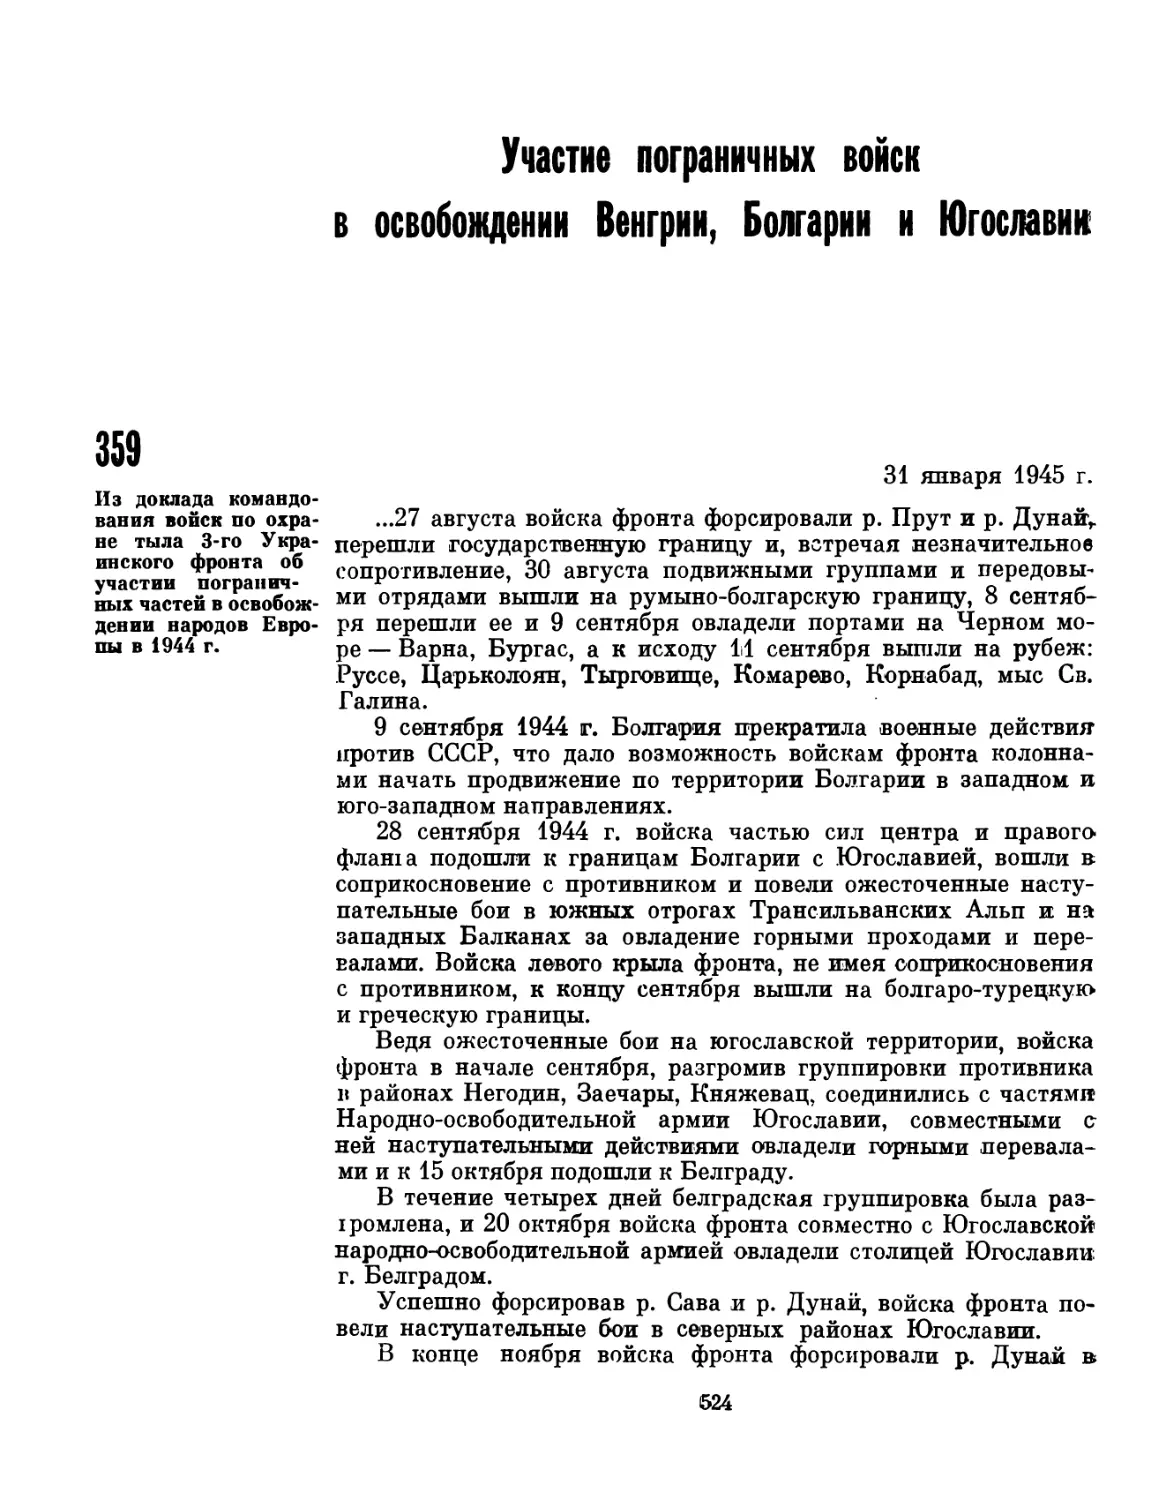 Участие пограничных войск в освобождении Венгрии, Болгарии и Югославии